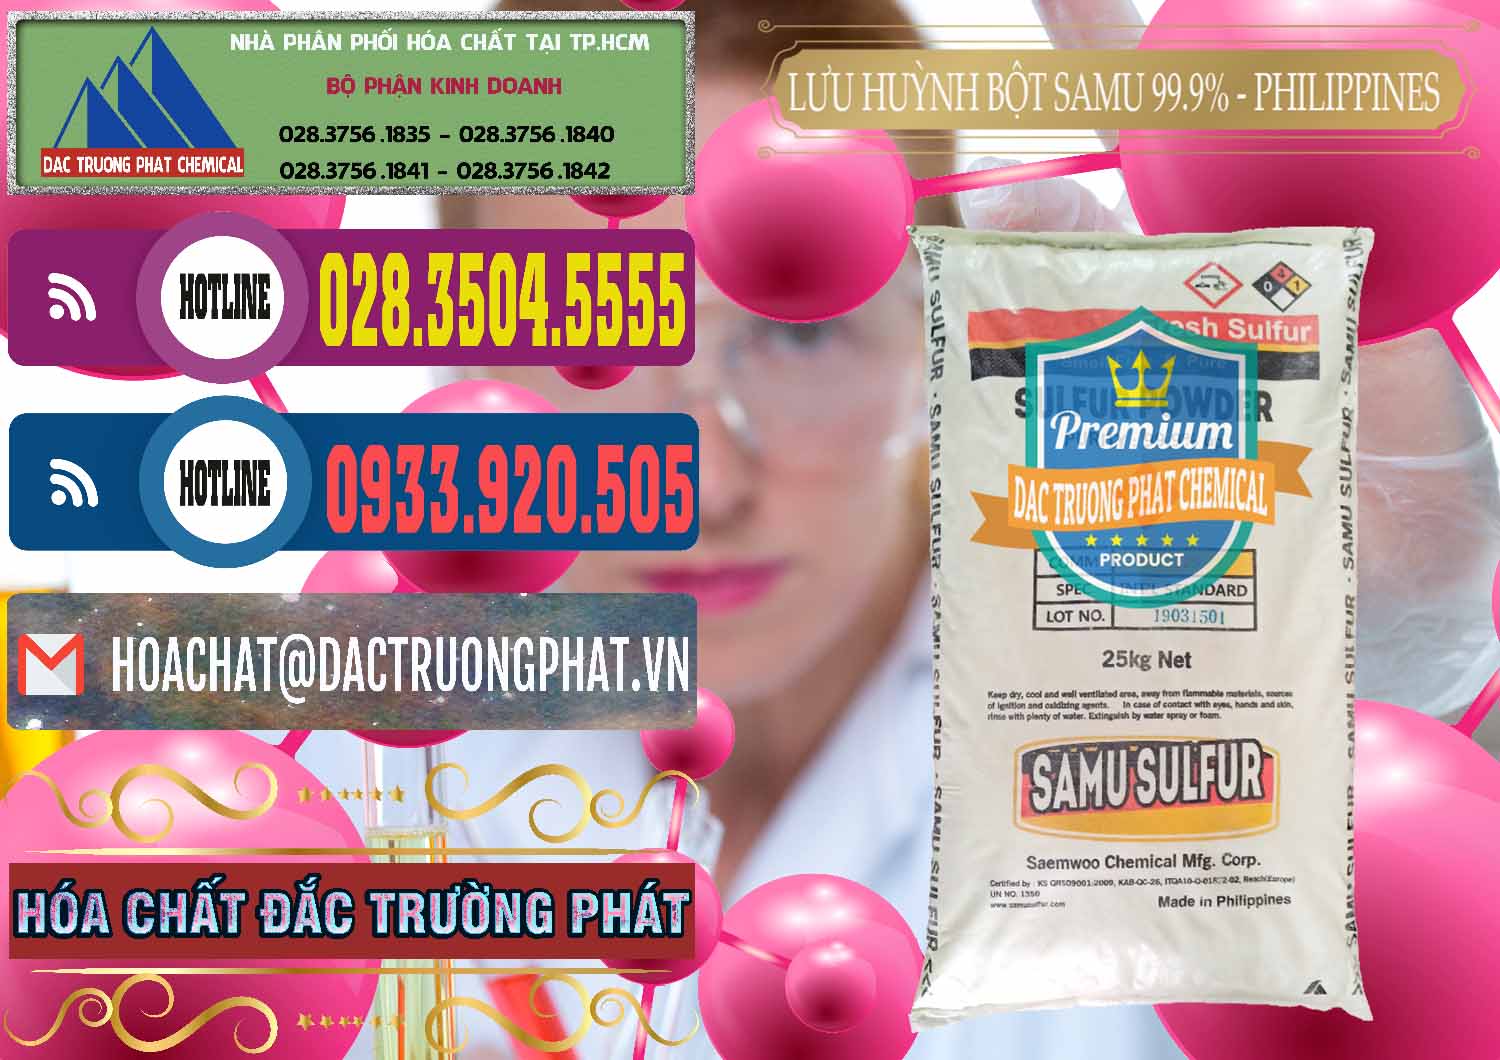 Cty chuyên cung cấp - bán Lưu huỳnh Bột - Sulfur Powder Samu Philippines - 0201 - Công ty chuyên cung ứng _ phân phối hóa chất tại TP.HCM - muabanhoachat.com.vn